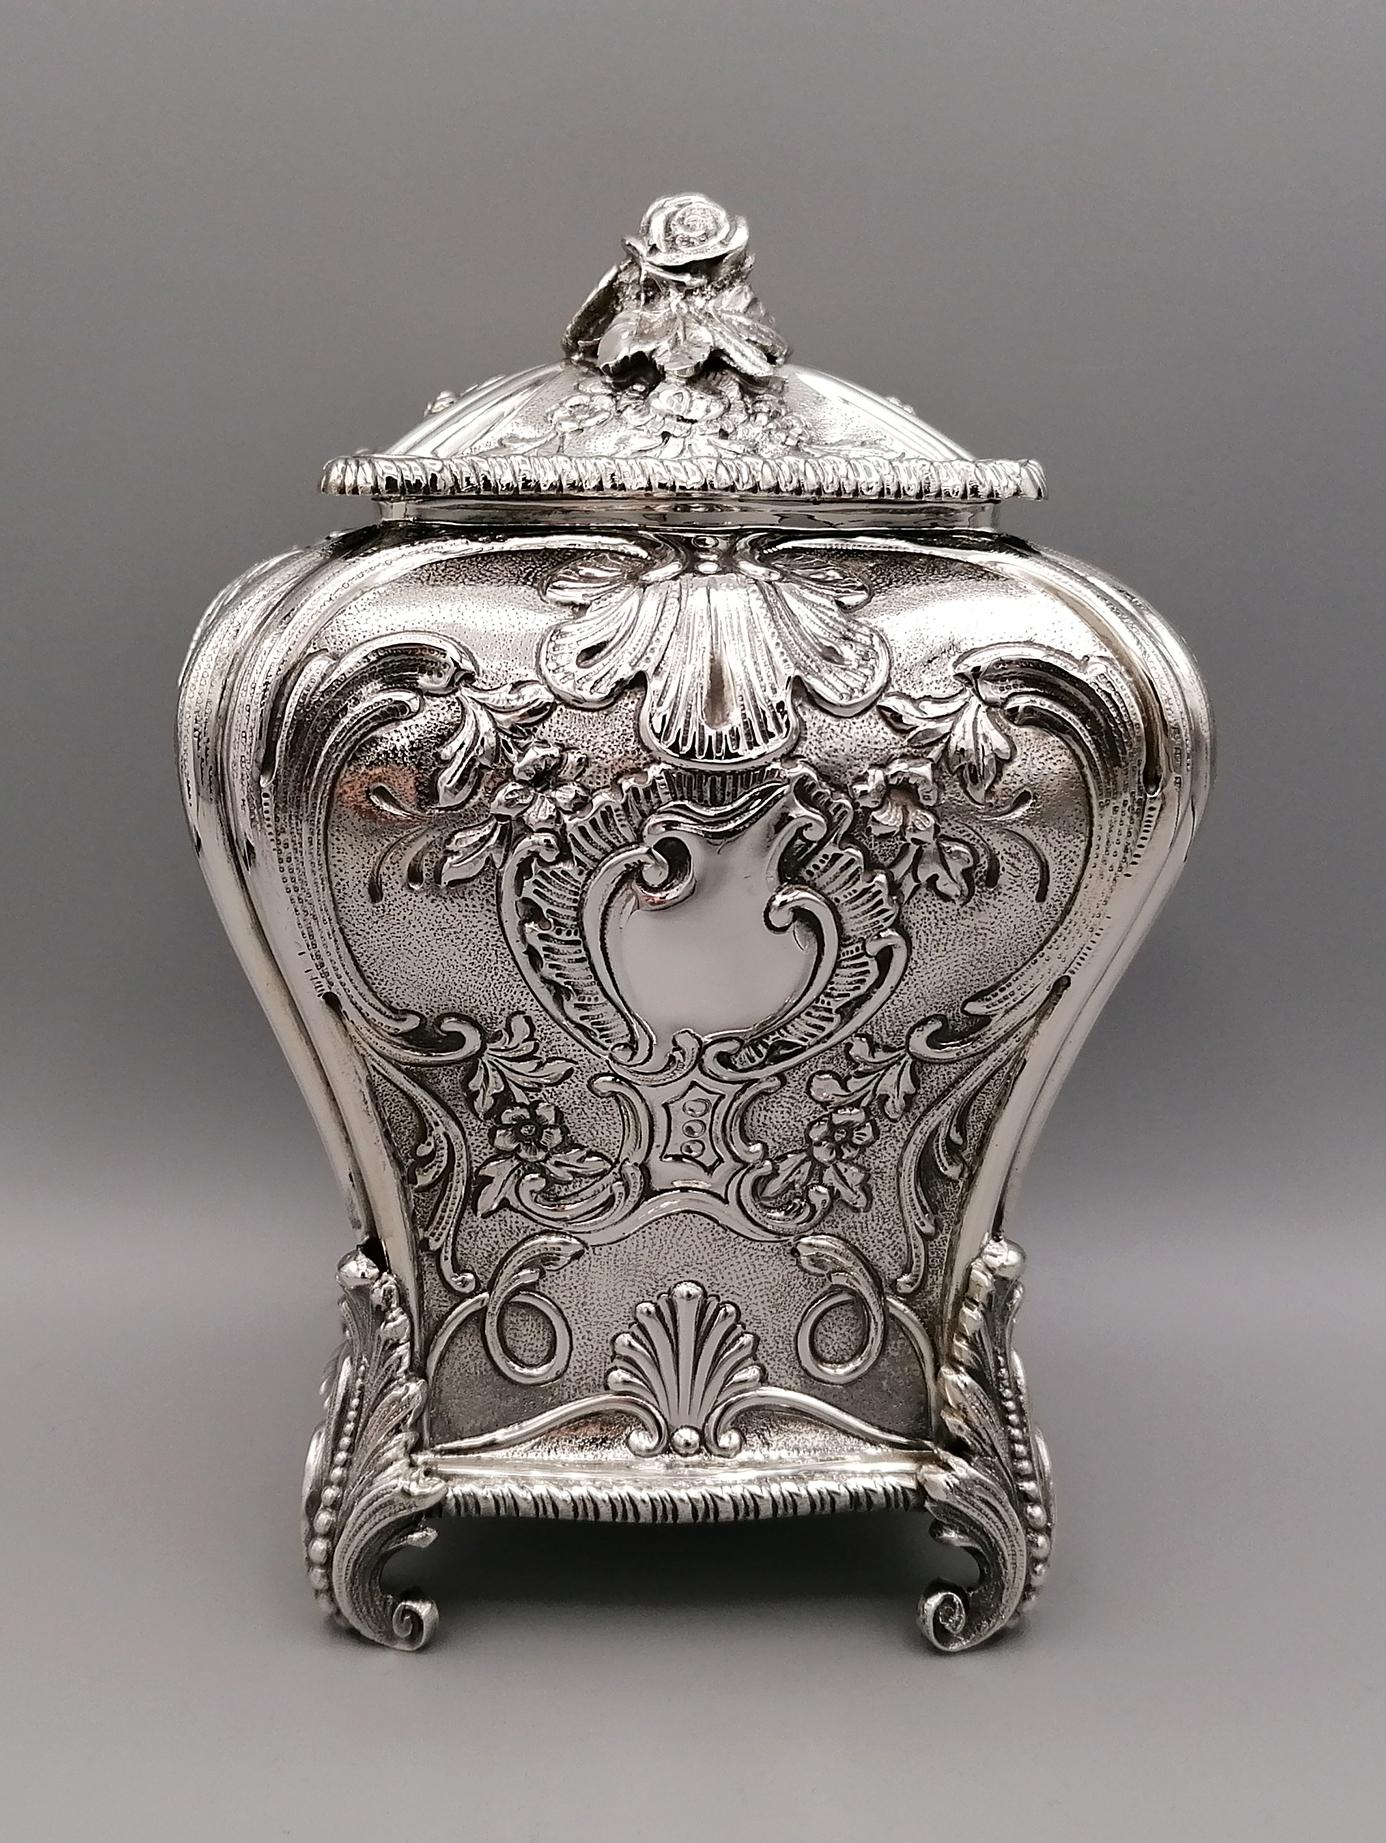 Nachbildung einer Teedose von George III. 
Sie wird aus einem Silberblech hergestellt, hat eine rechteckige Form mit geformten Seiten und ist mit floralen Motiven und Muscheln geprägt und ziseliert. Die Füße bilden Akanthusblätter nach. Der Deckel